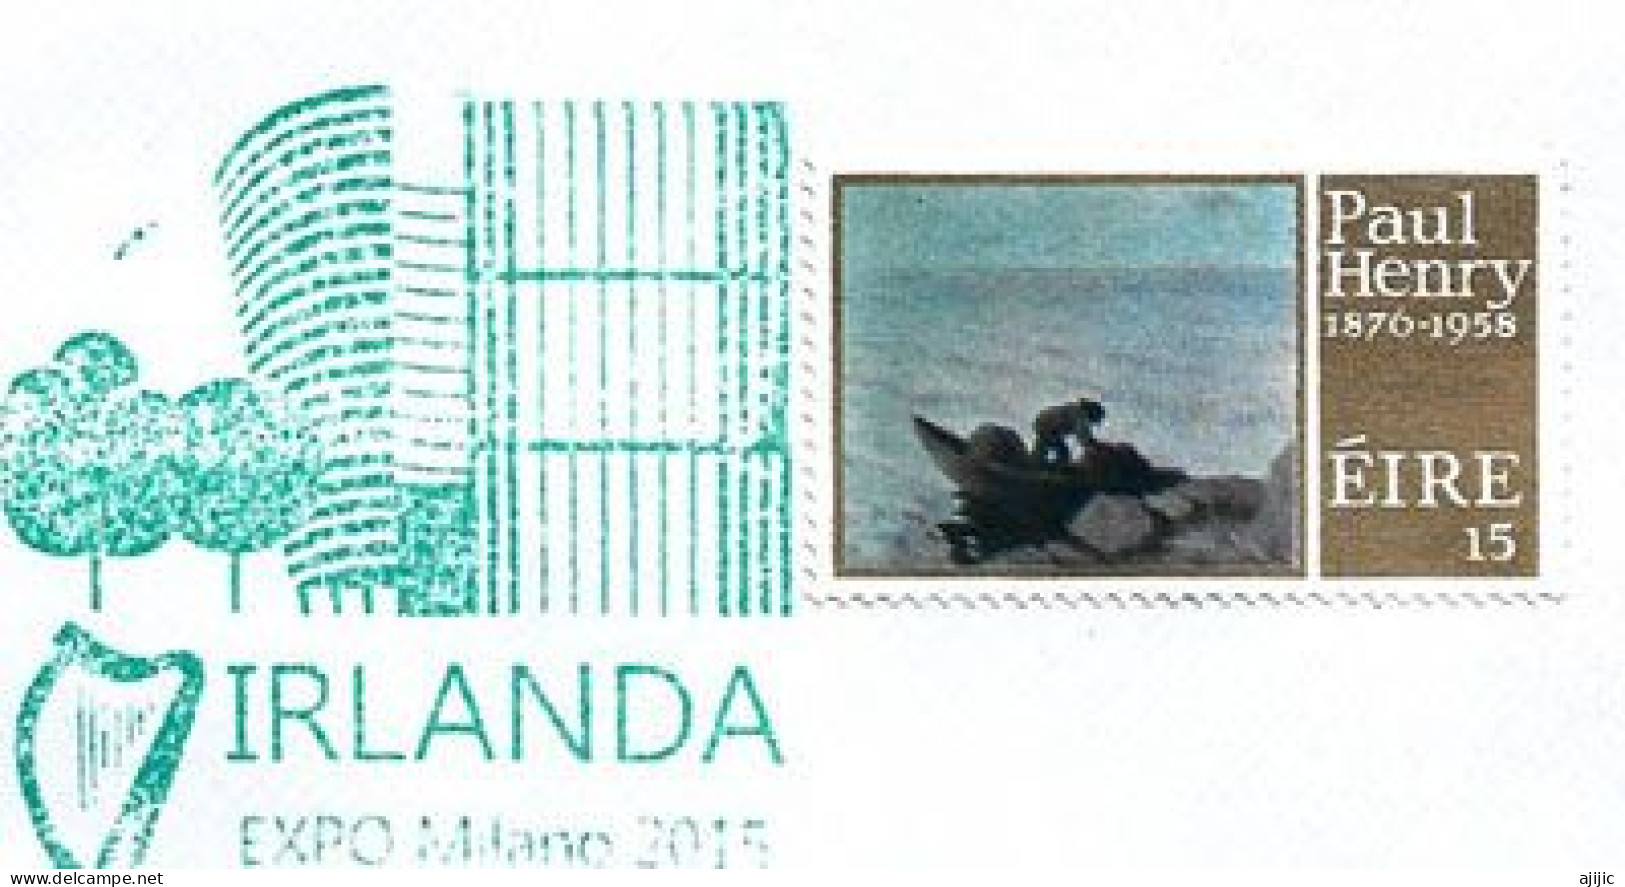 IRLAND / EIRE. EXPO UNIVERSELLE MILANO 2015., Lettre Avec Timbre Irlandais, Du Pavillon IRLANDE (rare) - Lettres & Documents